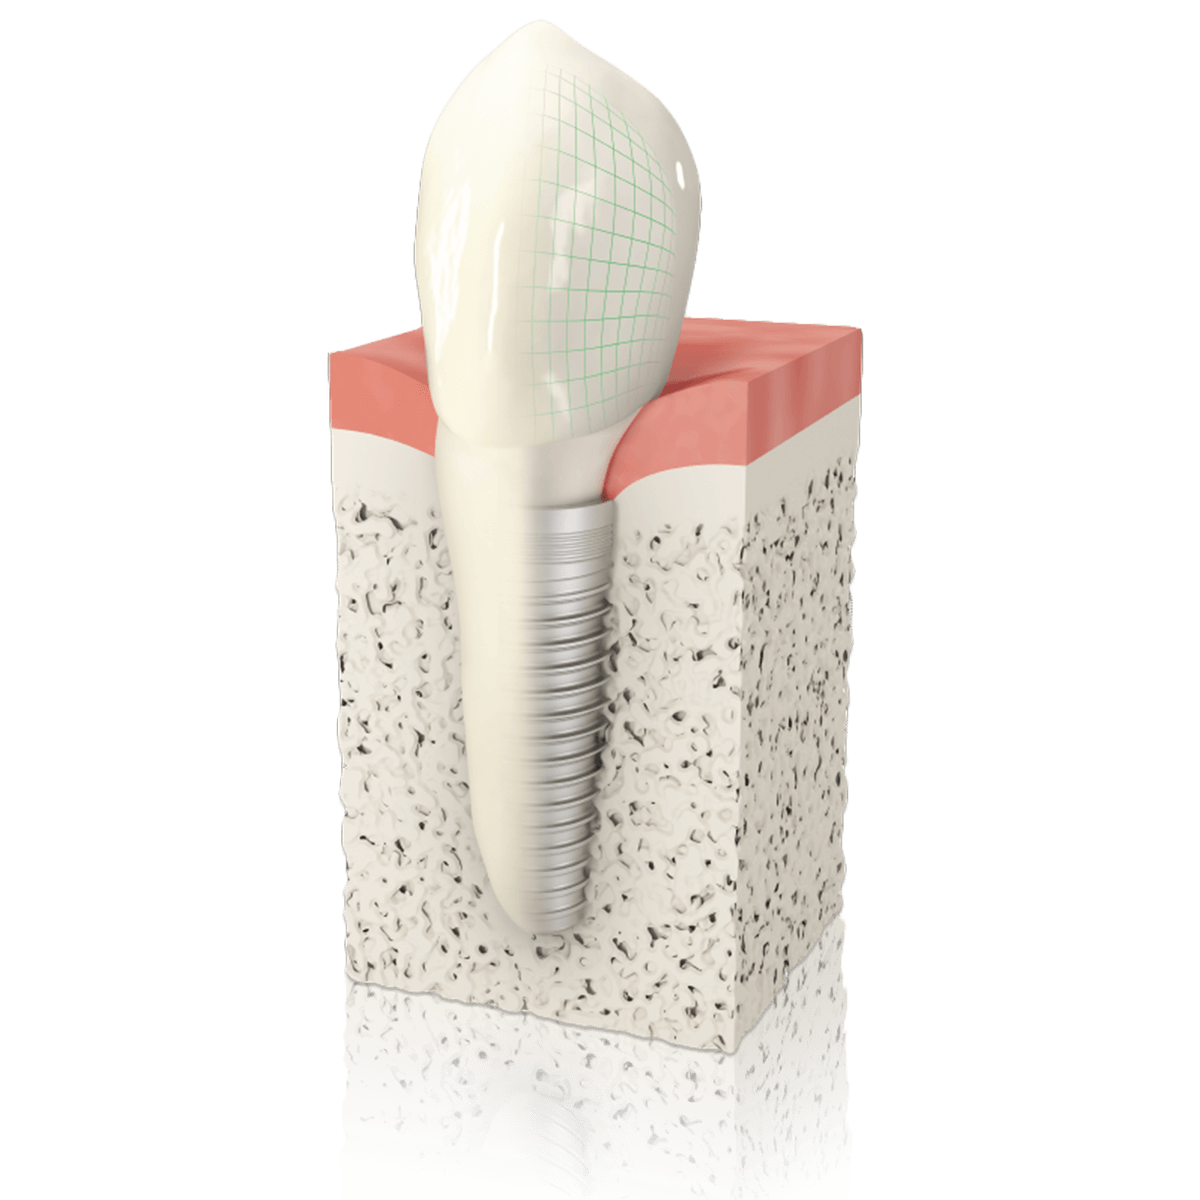 3D-Computer Bild eines Implantats im Knochen